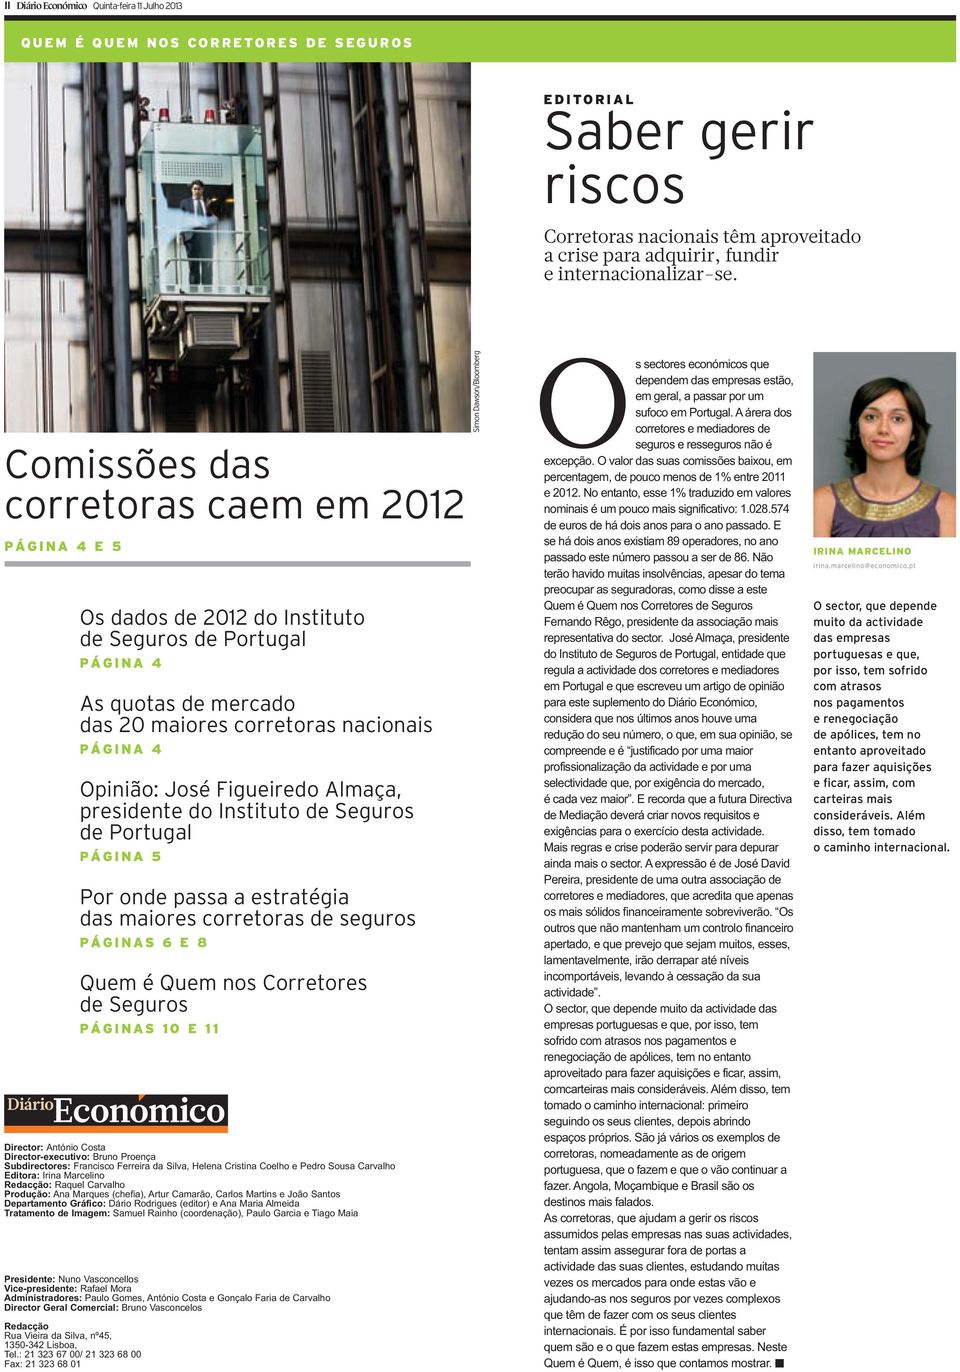 Comissões das corretoras caem em 2012 PÁGINA 4 E 5 Os dados de 2012 do Instituto de Seguros de Portugal PÁGINA 4 As quotas de mercado das 20 maiores corretoras nacionais PÁGINA 4 Opinião: José